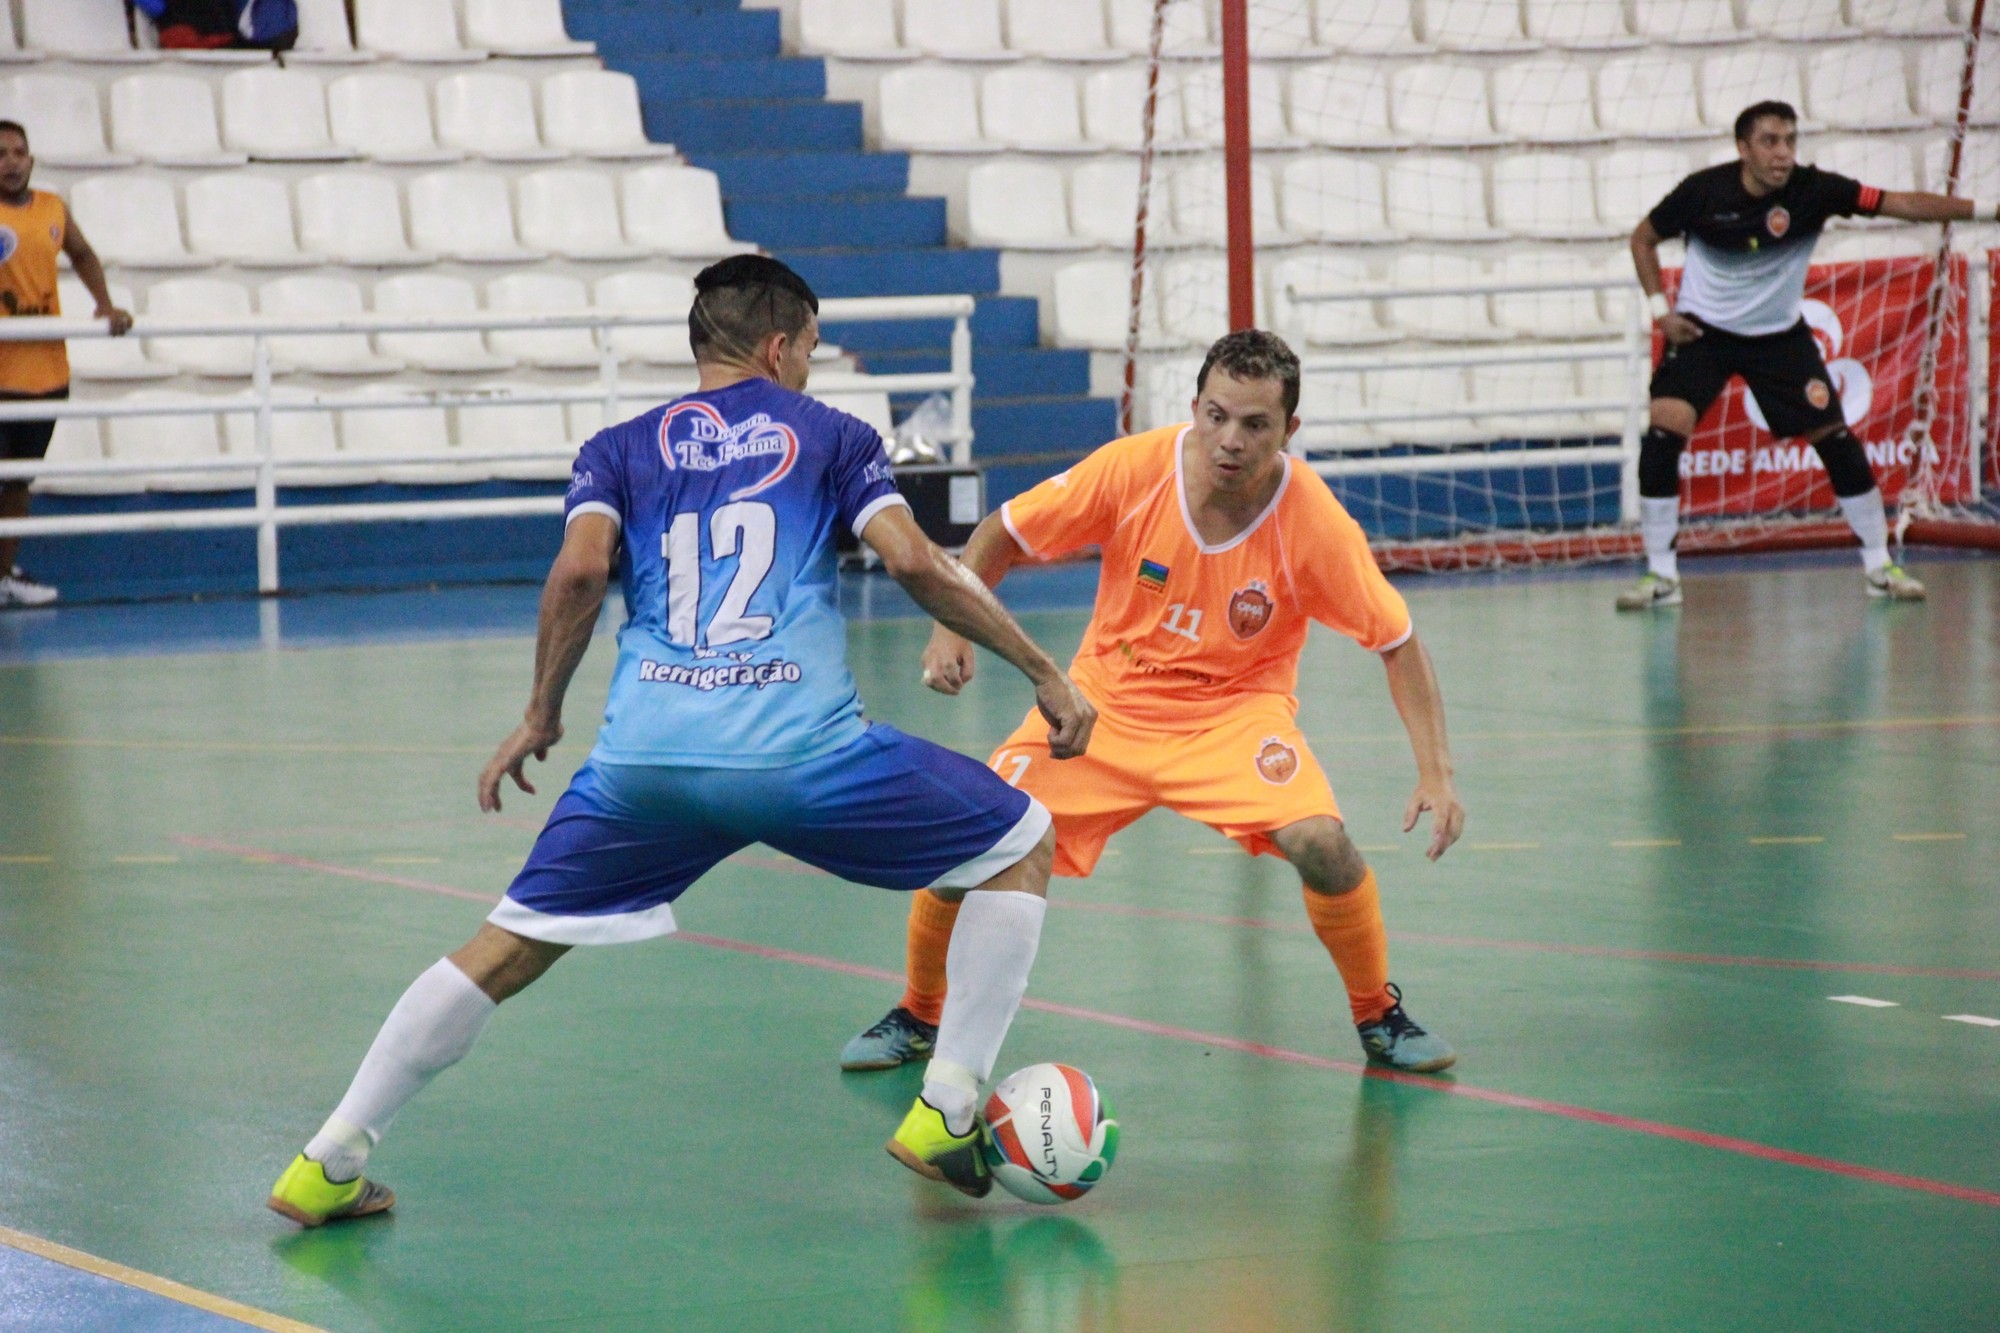 Jogos acirrados marcam finais da Copa Rede Amazônica de Futsal em Manaus; confira (Foto: Marcos Dantas/ Rede Amazônica)